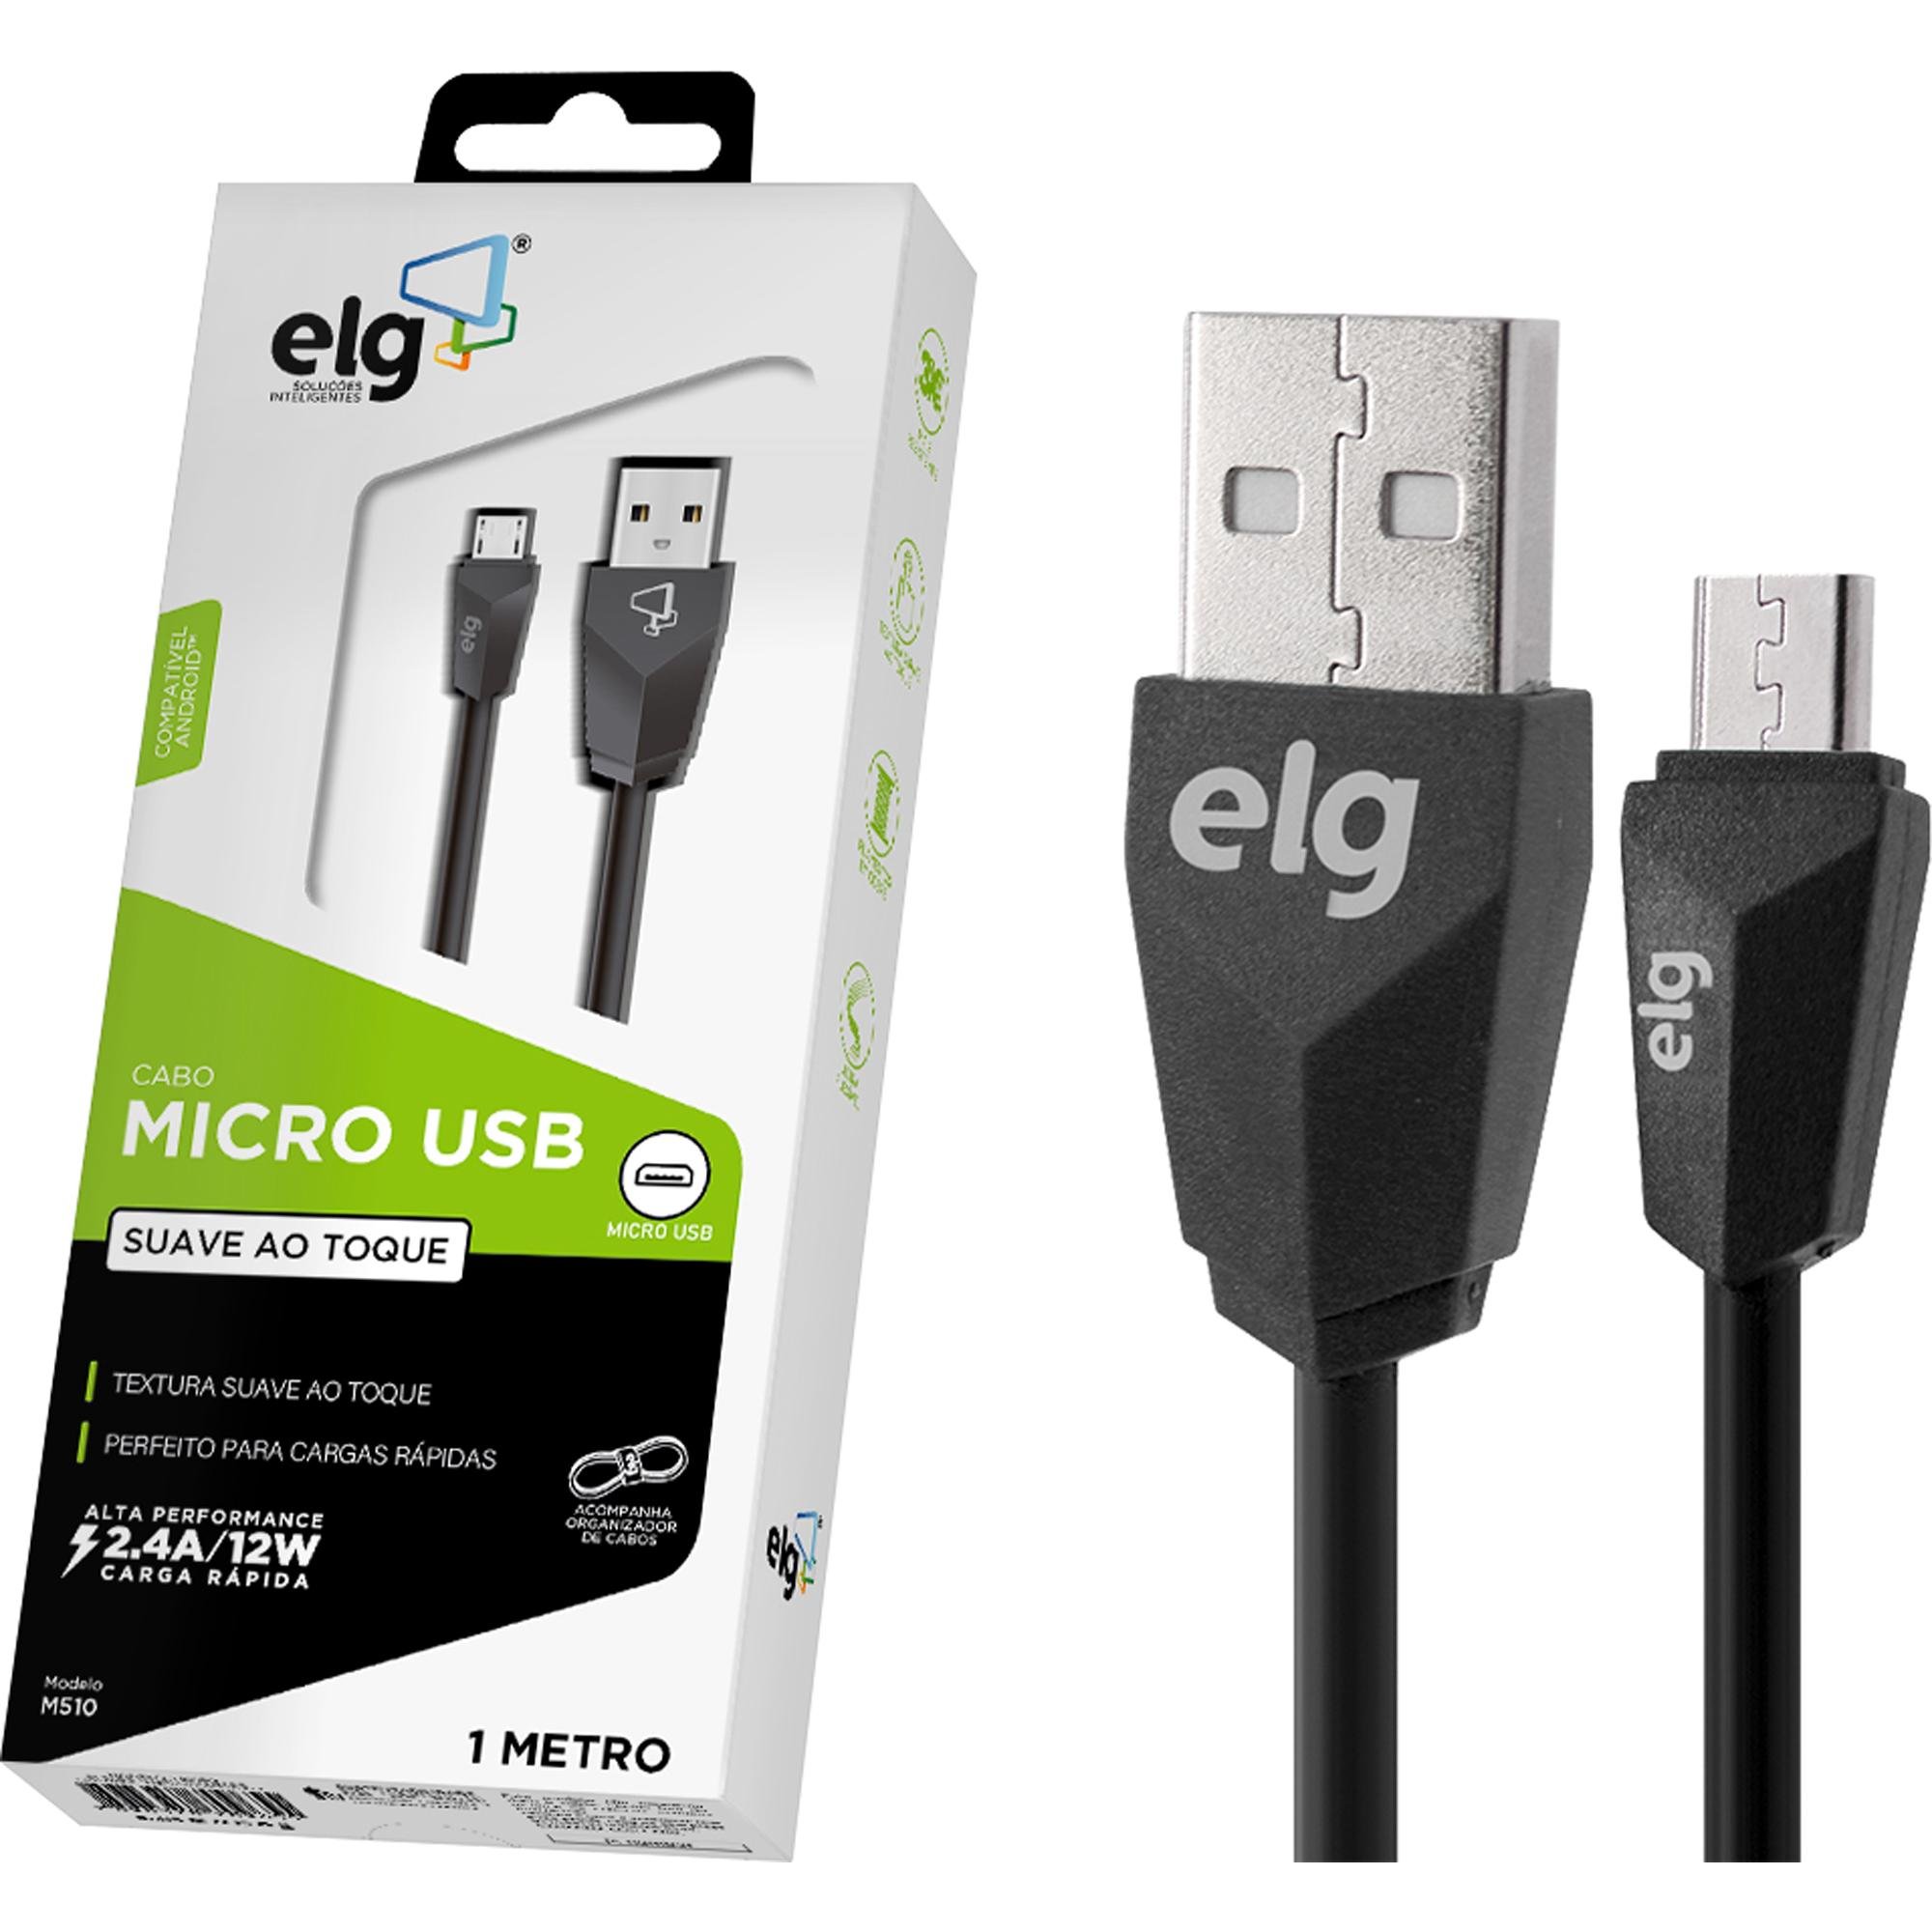 Cabo Micro USB M510 1m Preto ELG